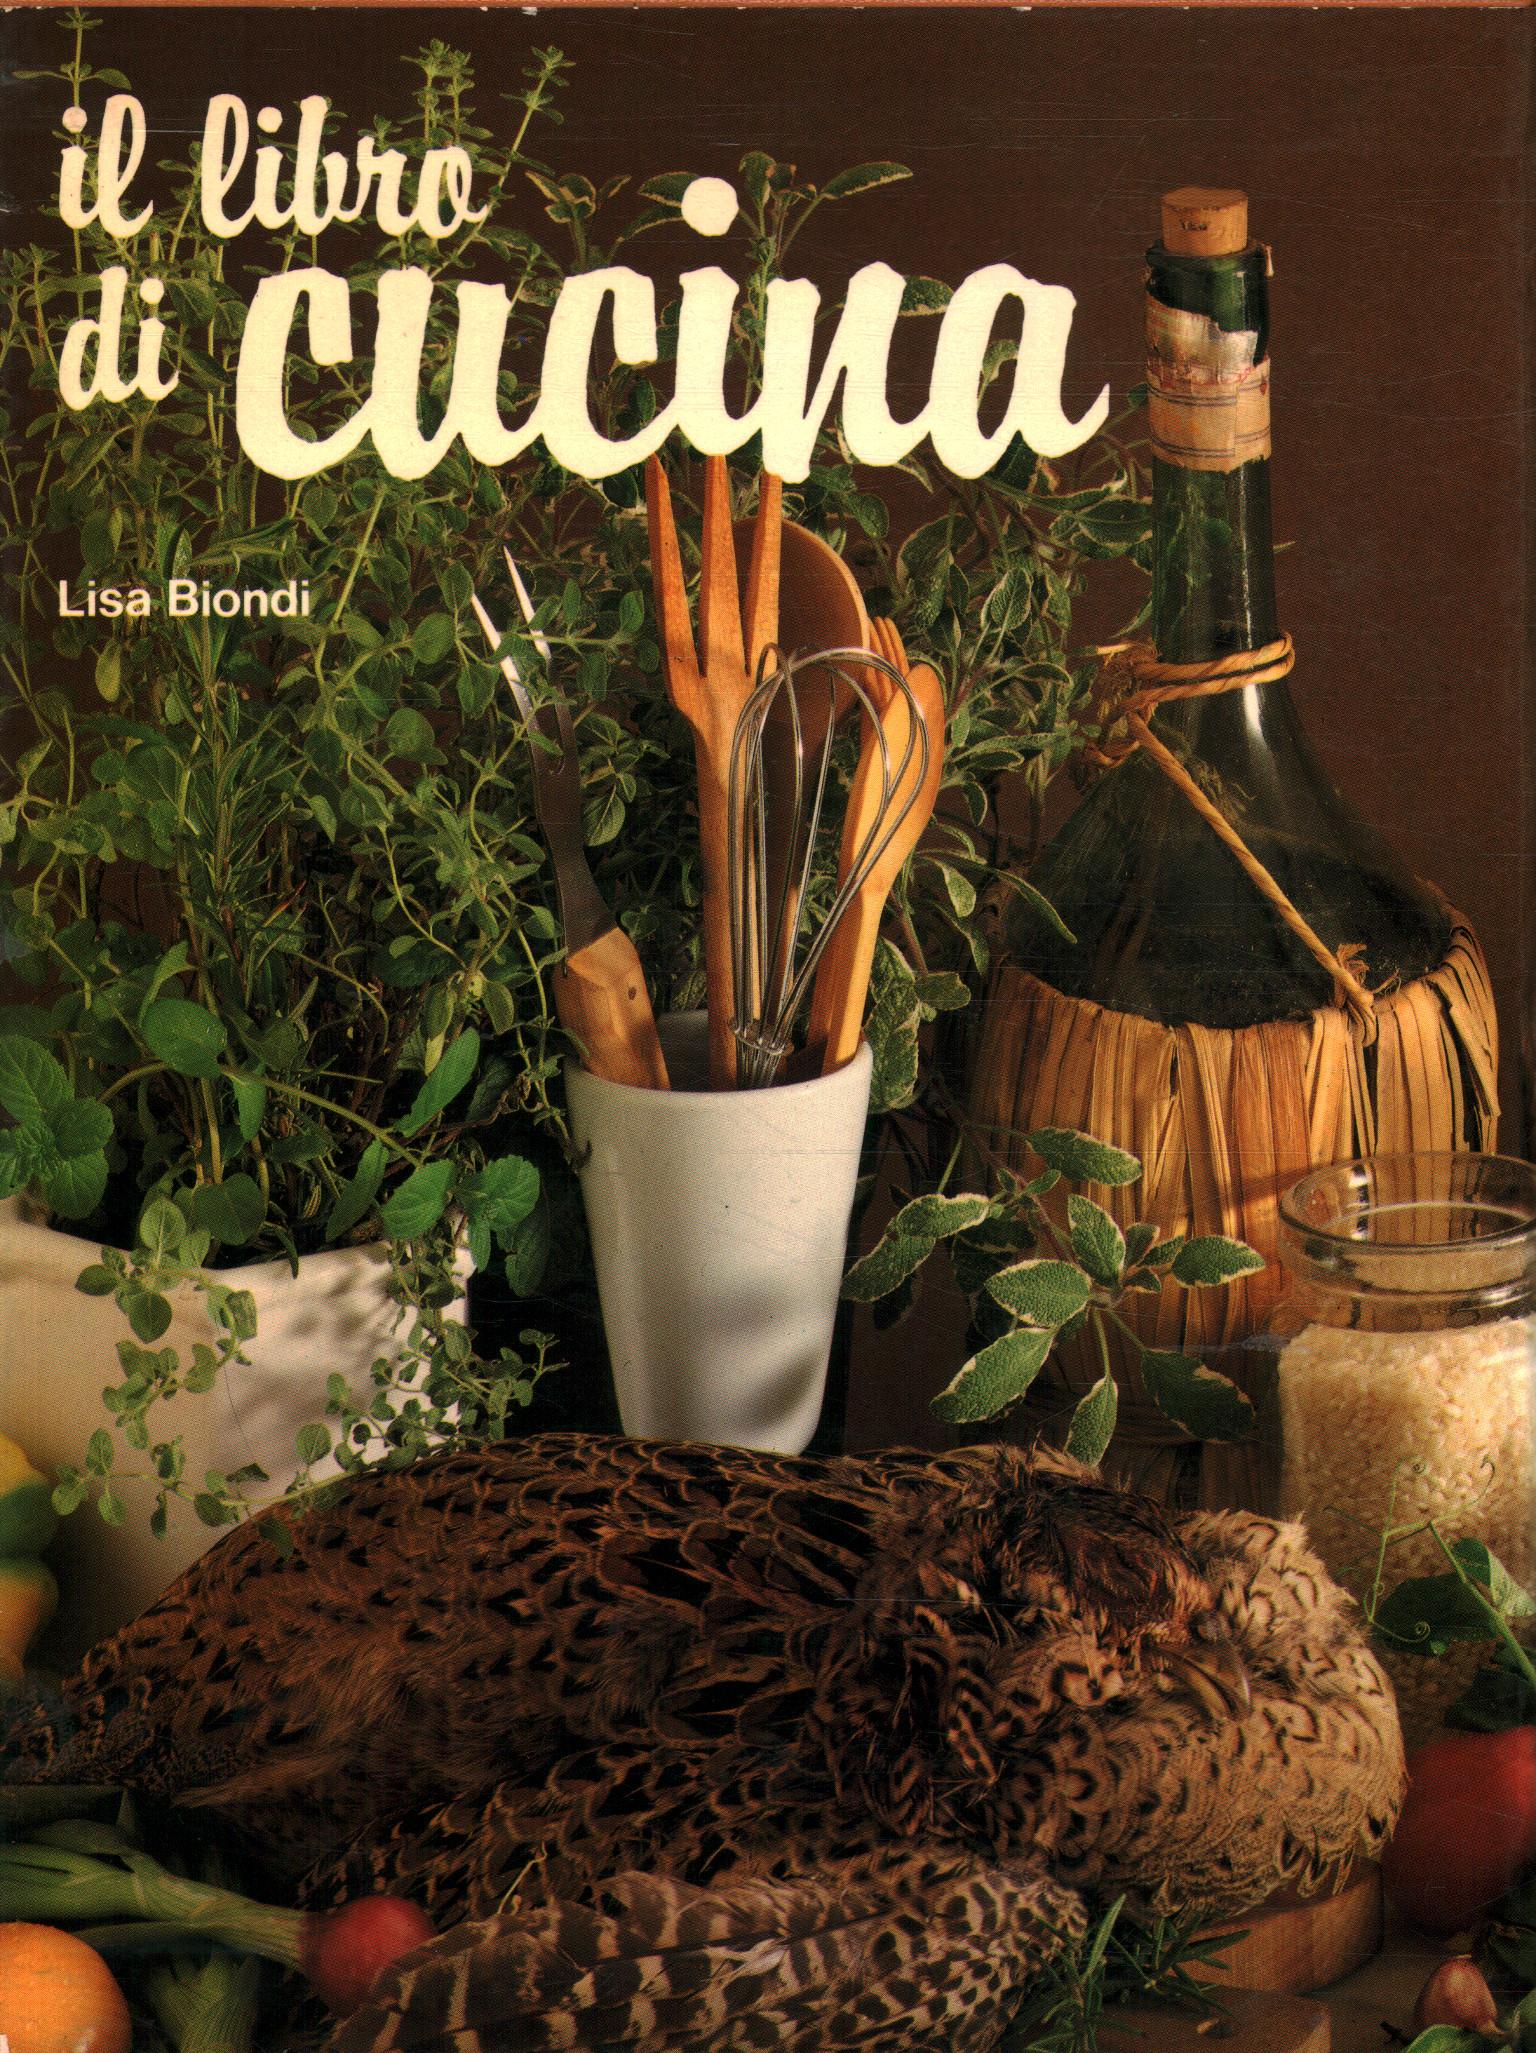 The cookbook, Lisa Biondi